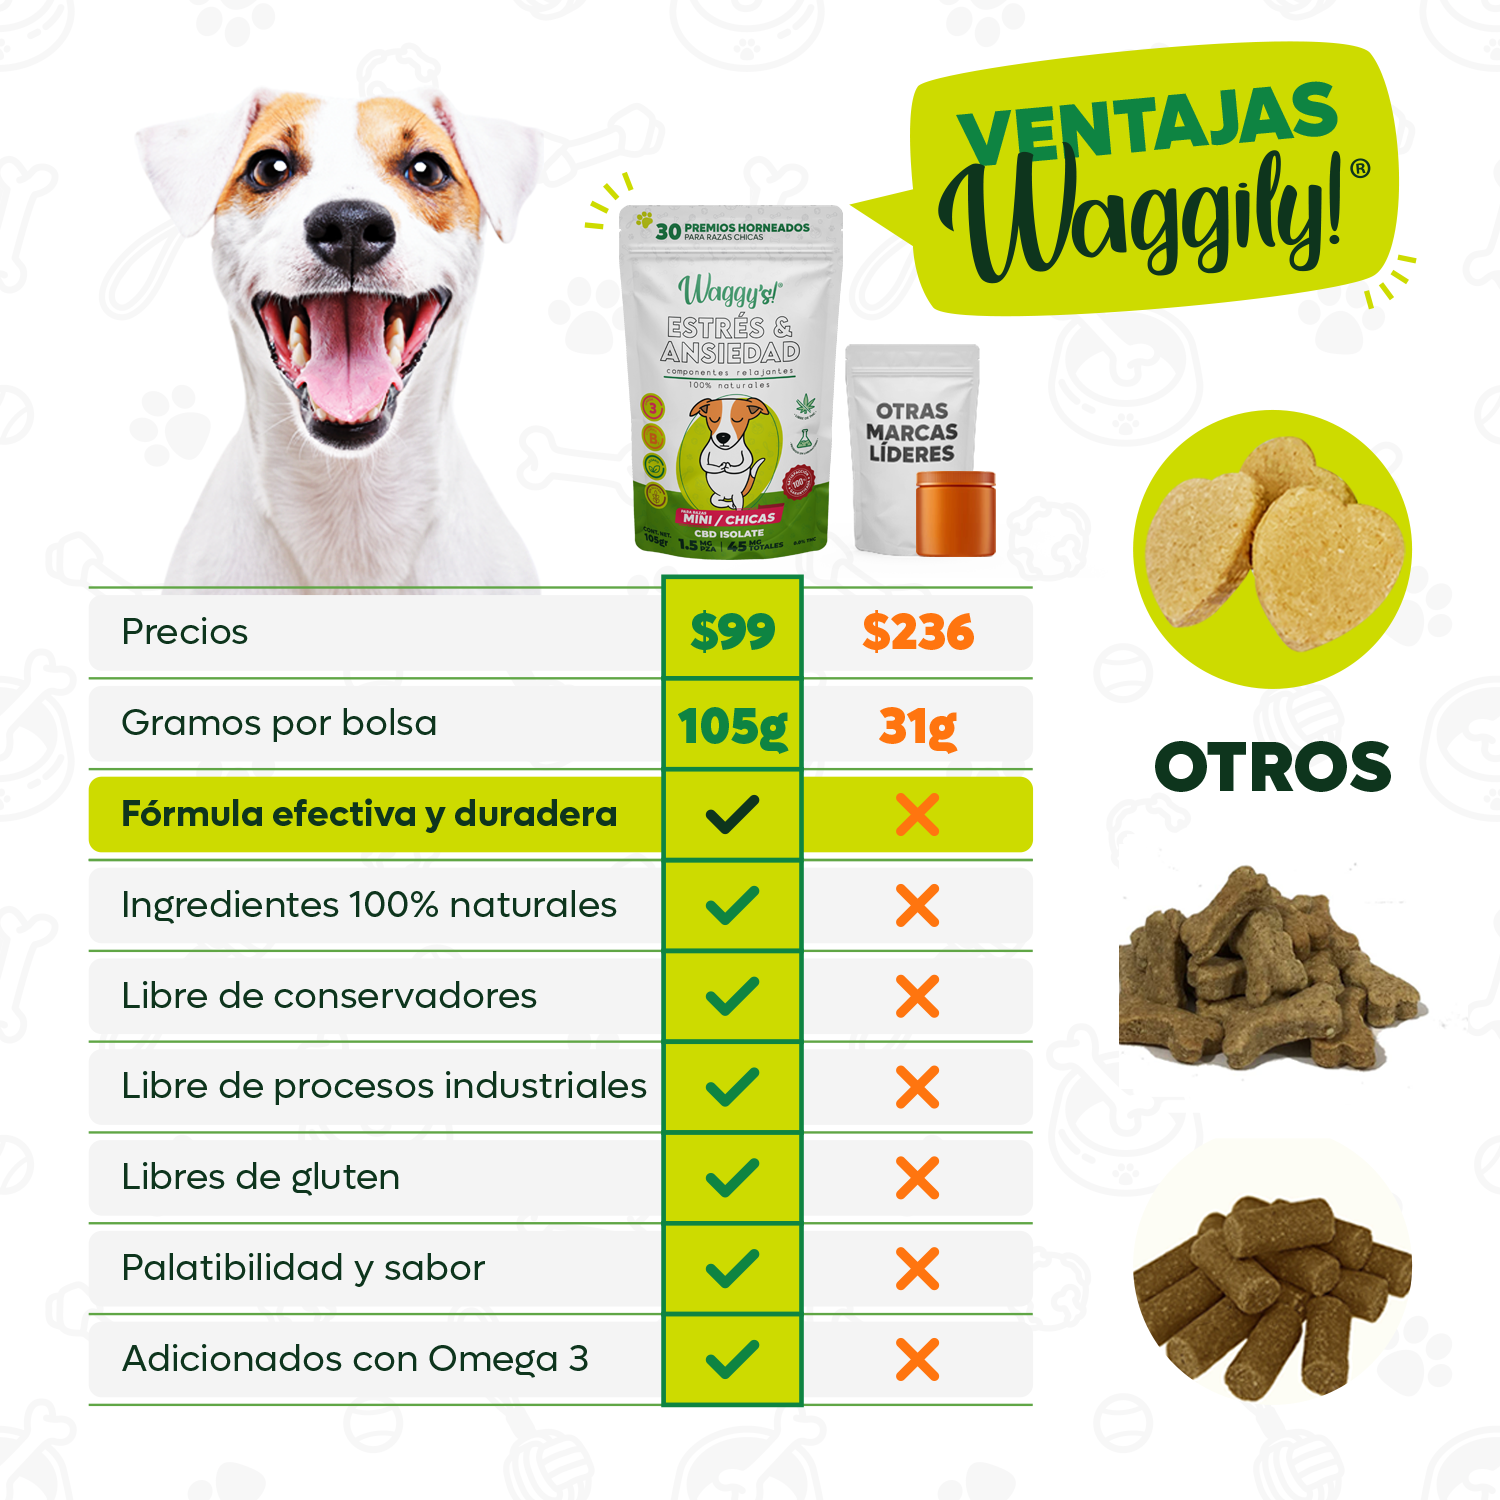 Aceite de Salmón y Oliva para Perros Relajante】Waggy's® –